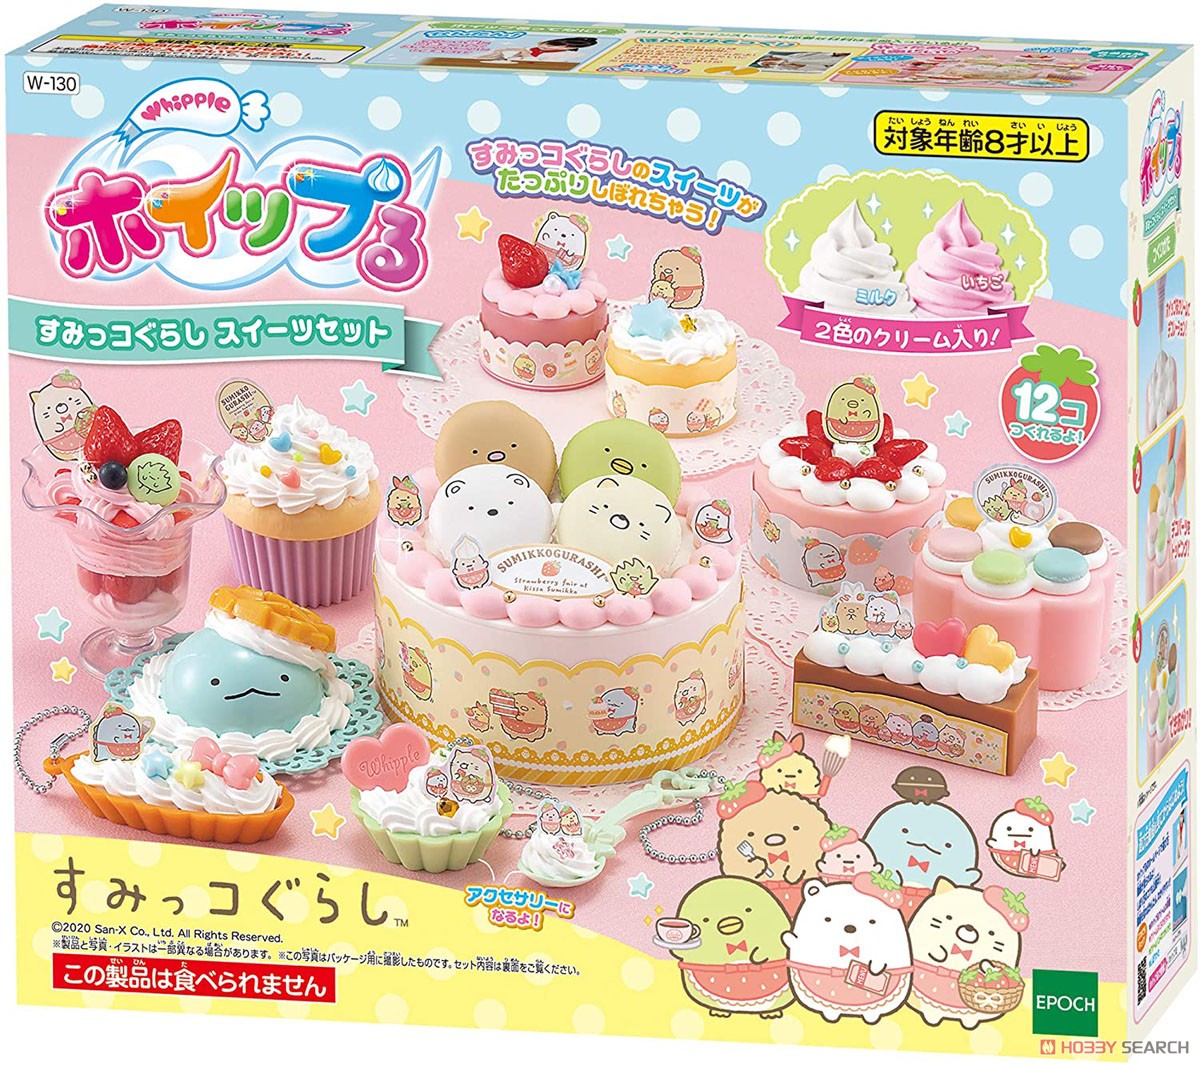 Whipple W-130 Sumikko Gurashi Sweets set (Interactive Toy) Package1